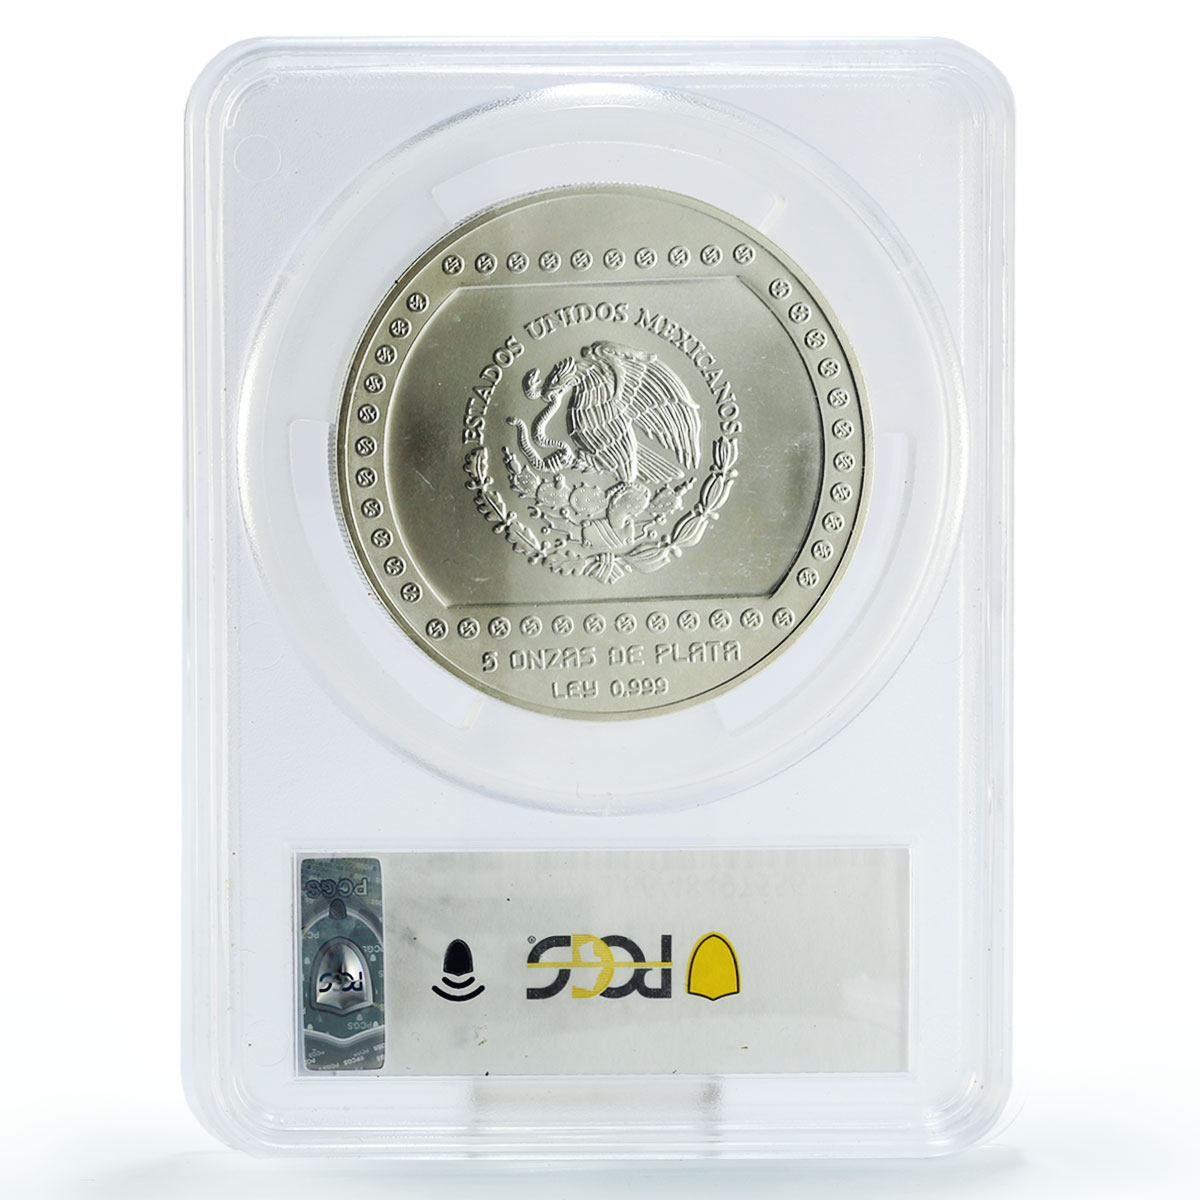 Mexico 10 pesos Precolombina Pyramid El Tajin MS66 PCGS silver coin 1993